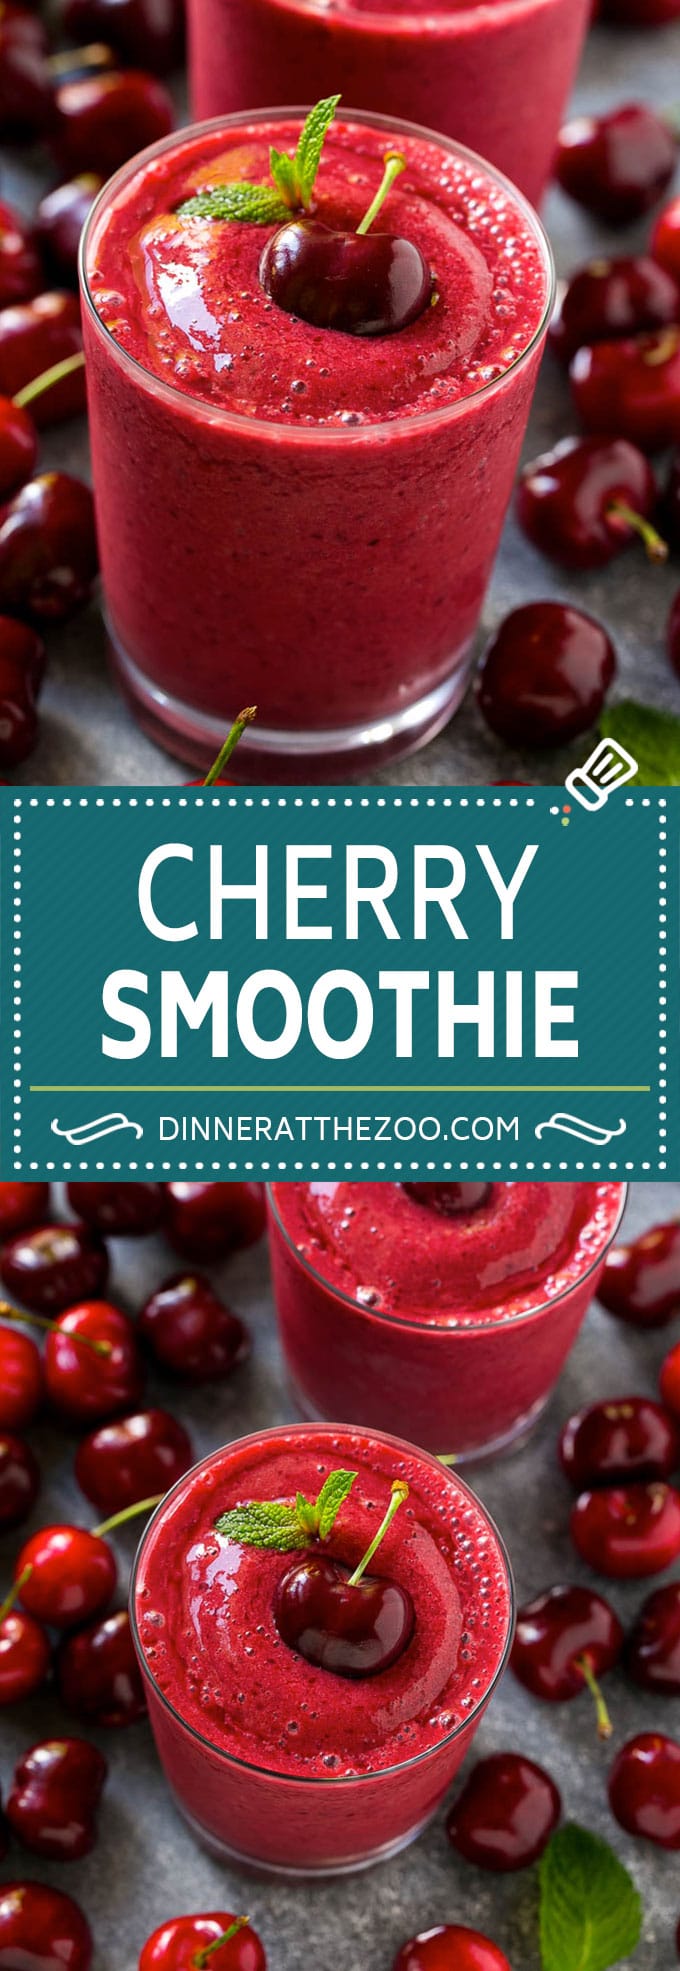 Cherry Smoothie